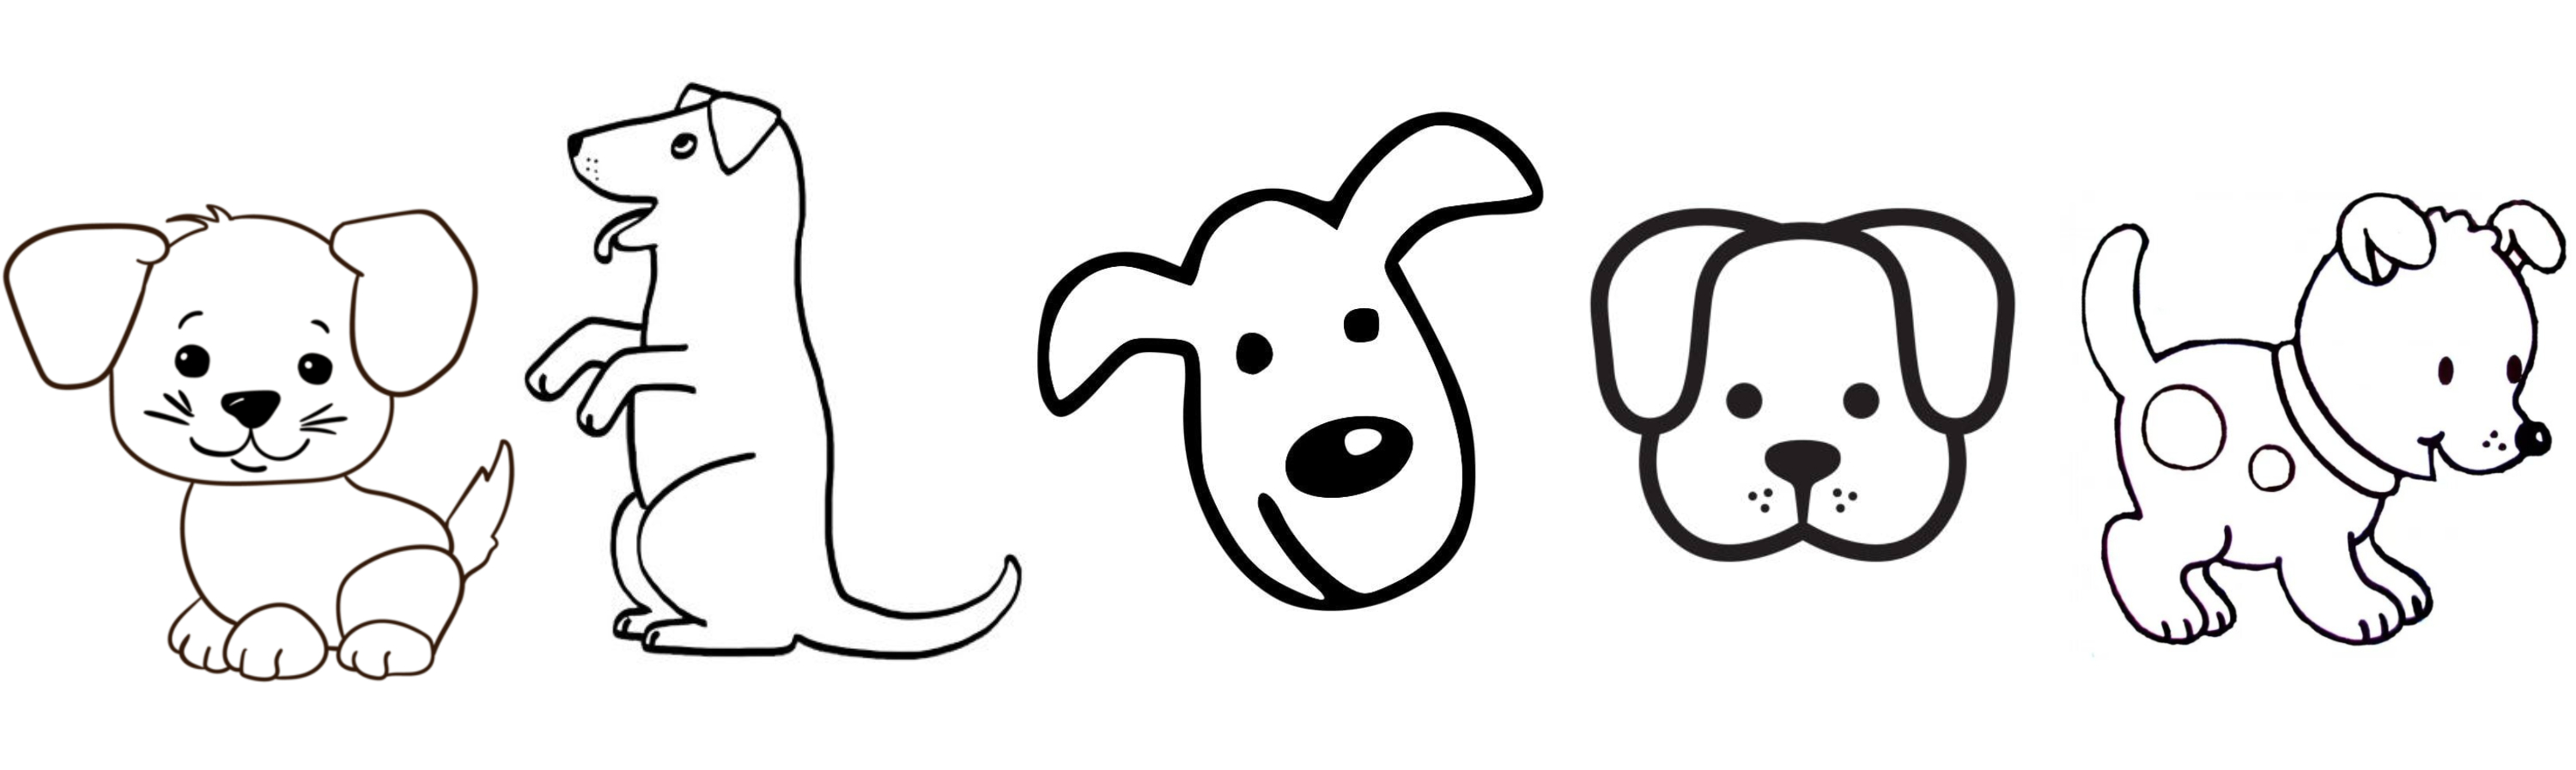 10 ideas de dibujos fáciles para hacer de perros